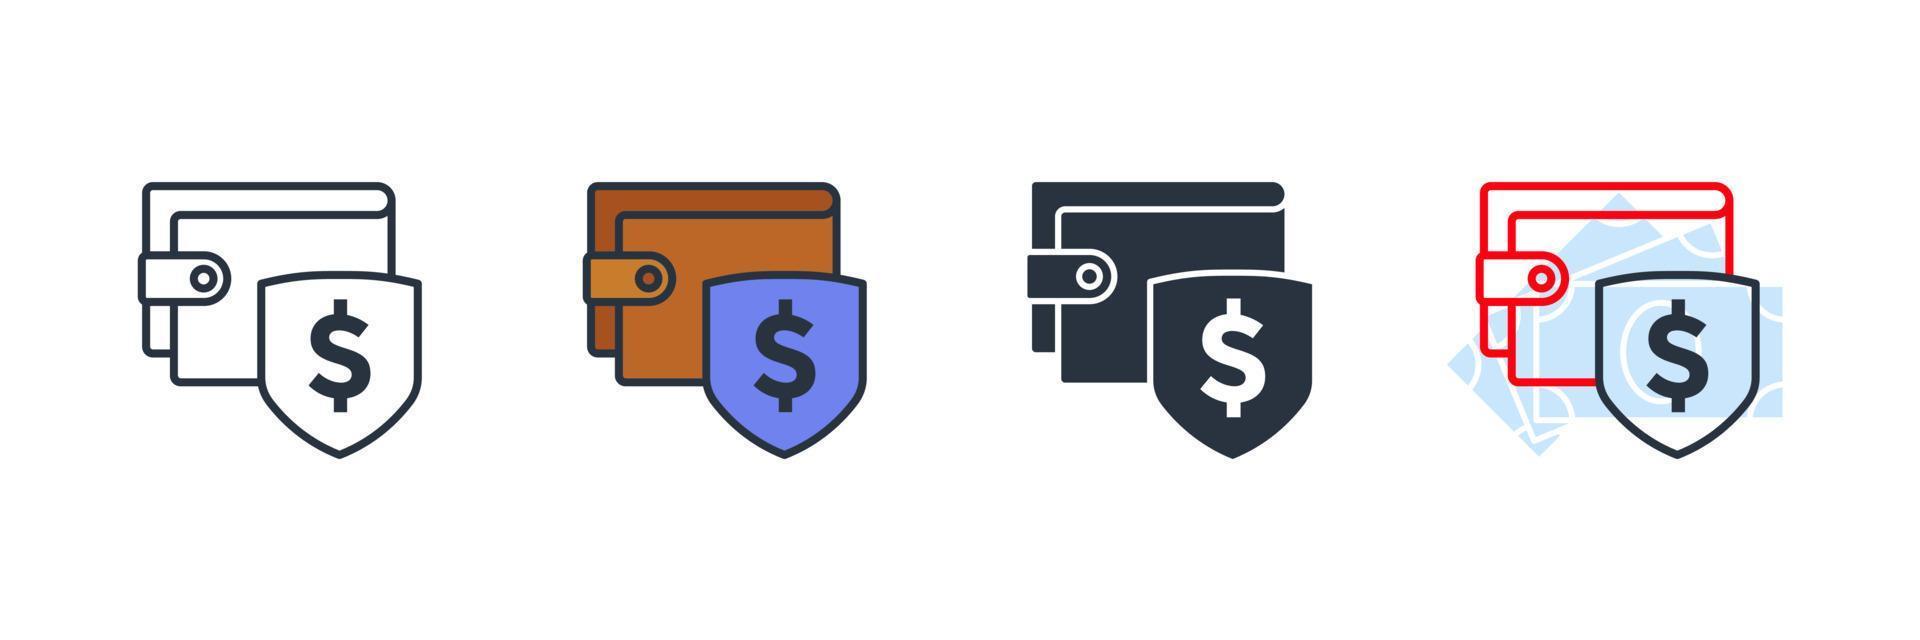 schutz brieftasche symbol logo vektor illustration. Symbolvorlage für Sicherheitszahlungen für Grafik- und Webdesign-Sammlung